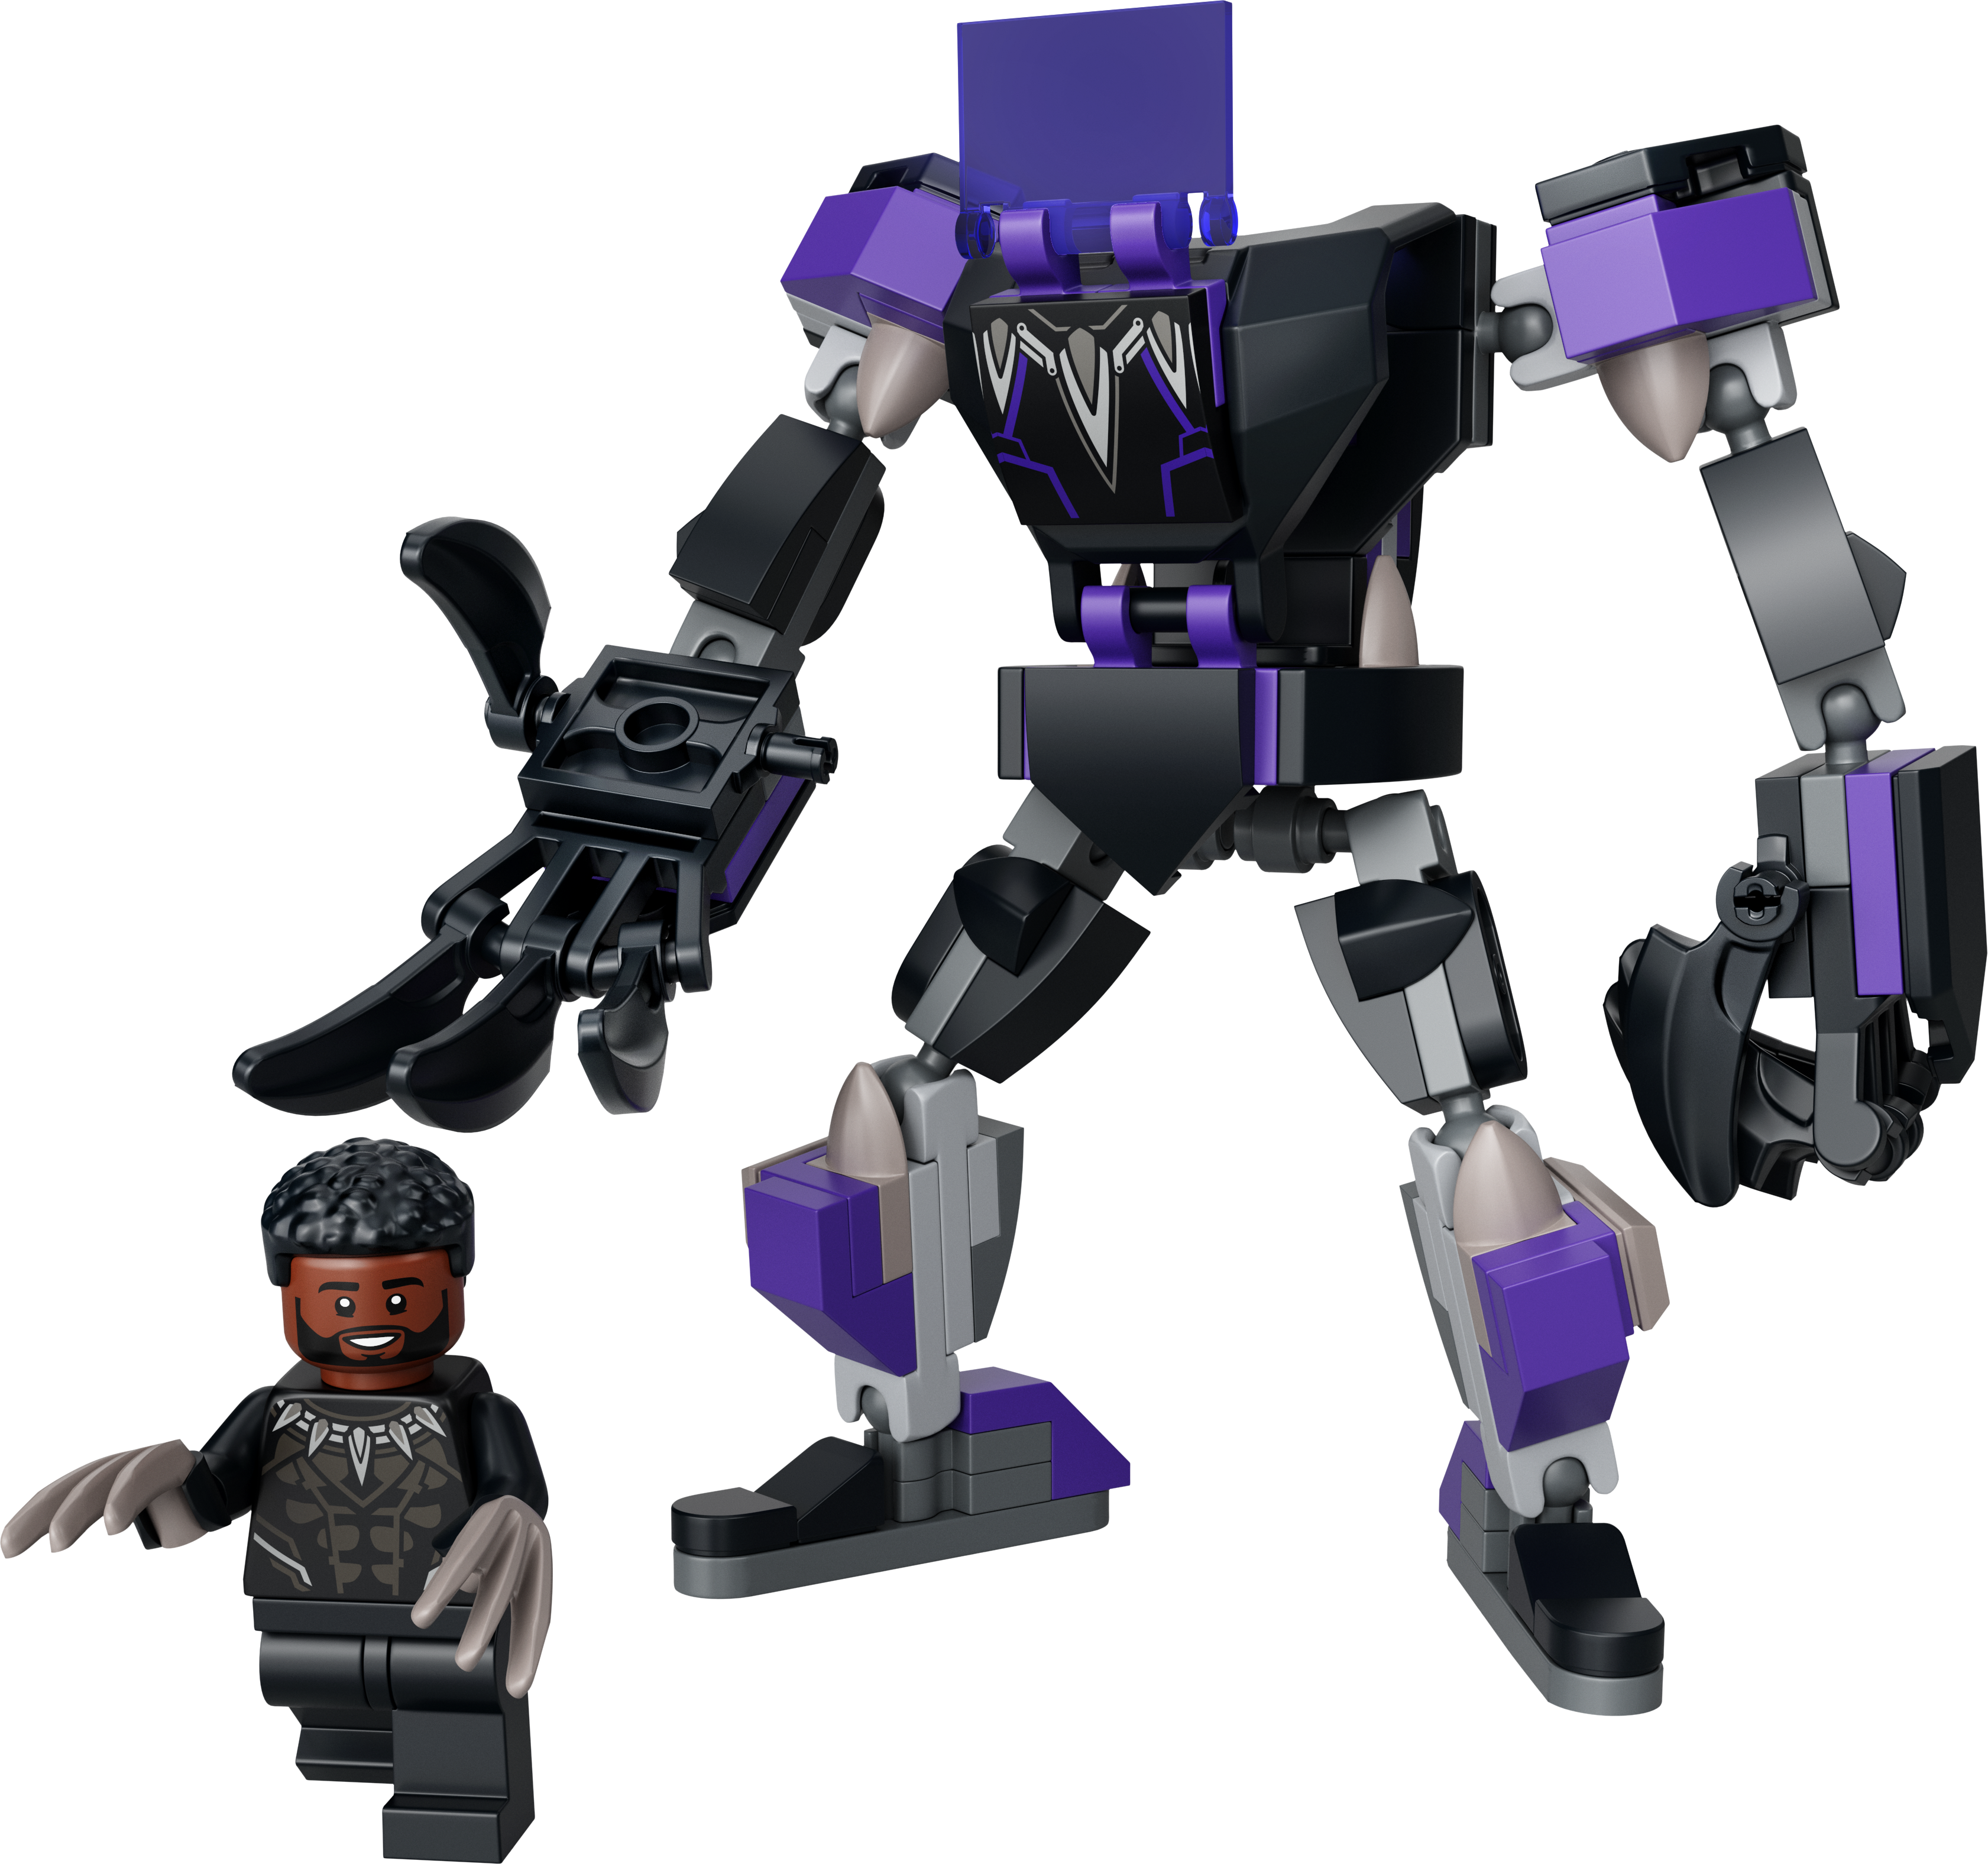 Super Hero Black Panthers Kamprobot - 76204